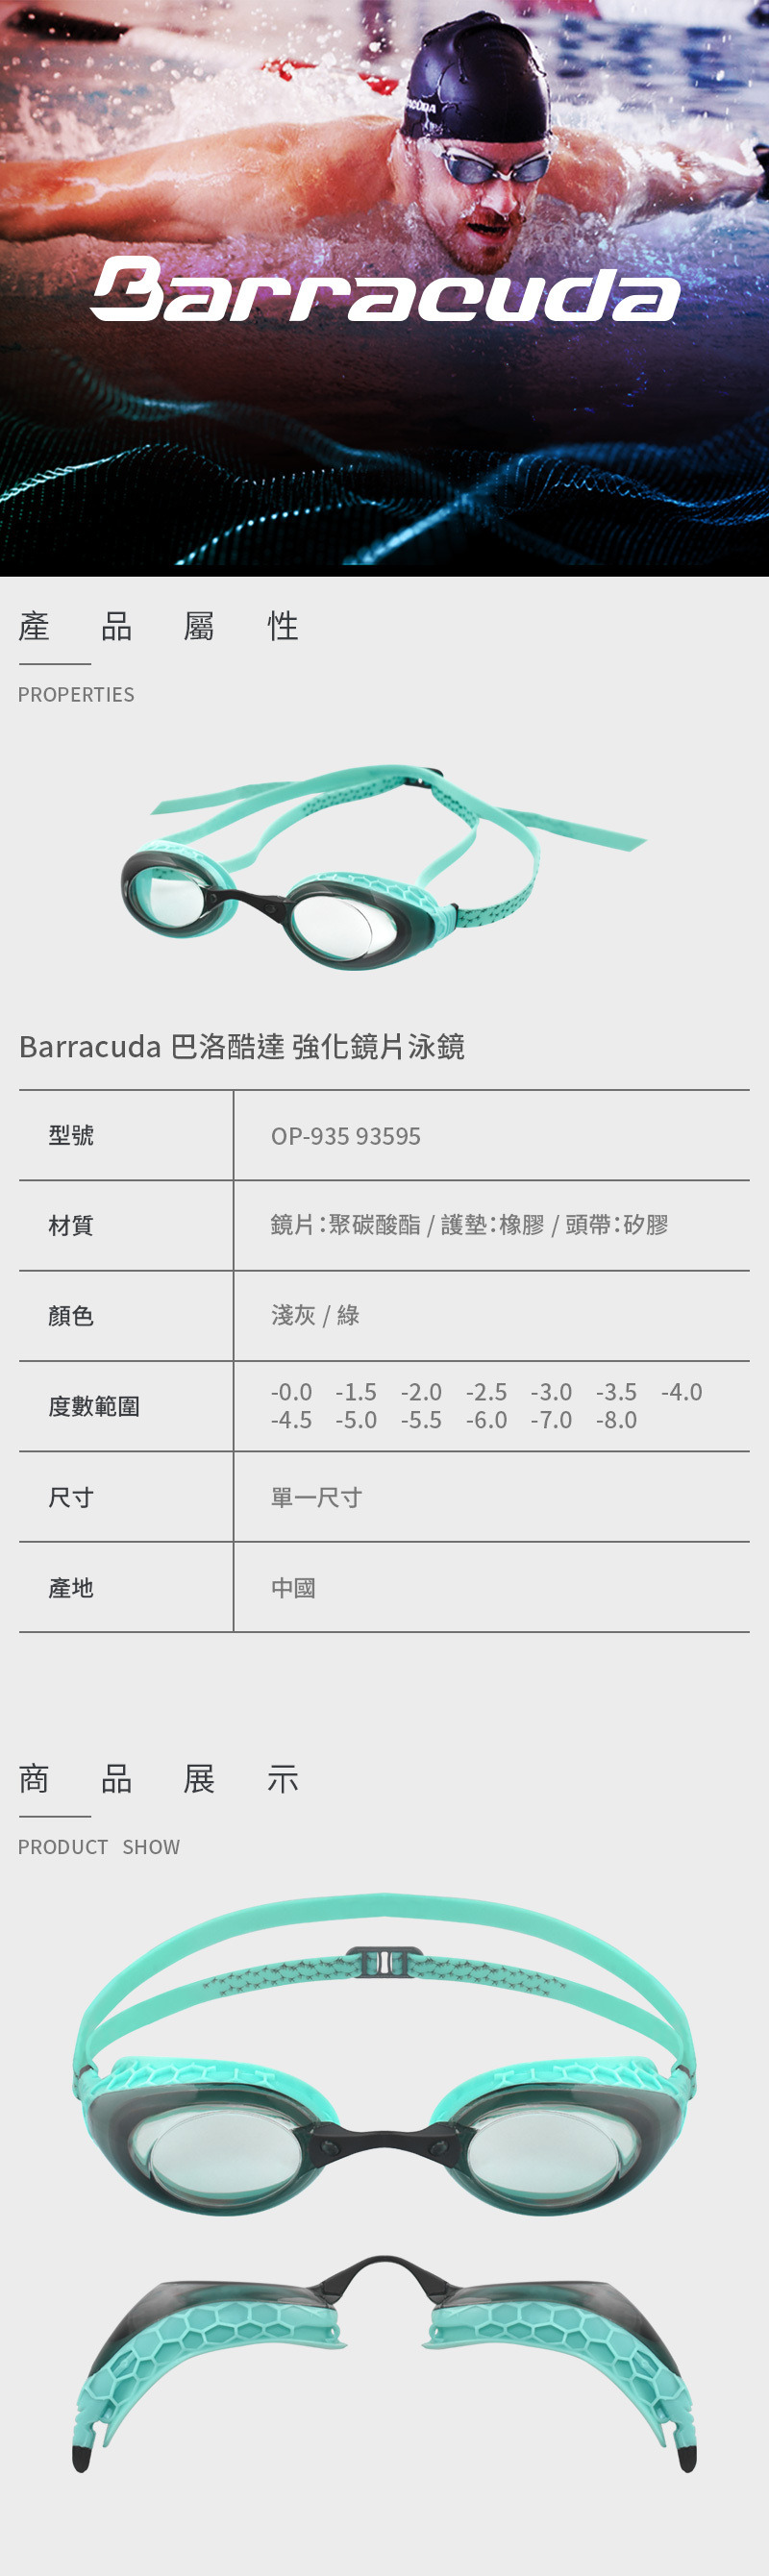 【Barracuda 巴洛酷達】光學度數泳鏡 OP-935